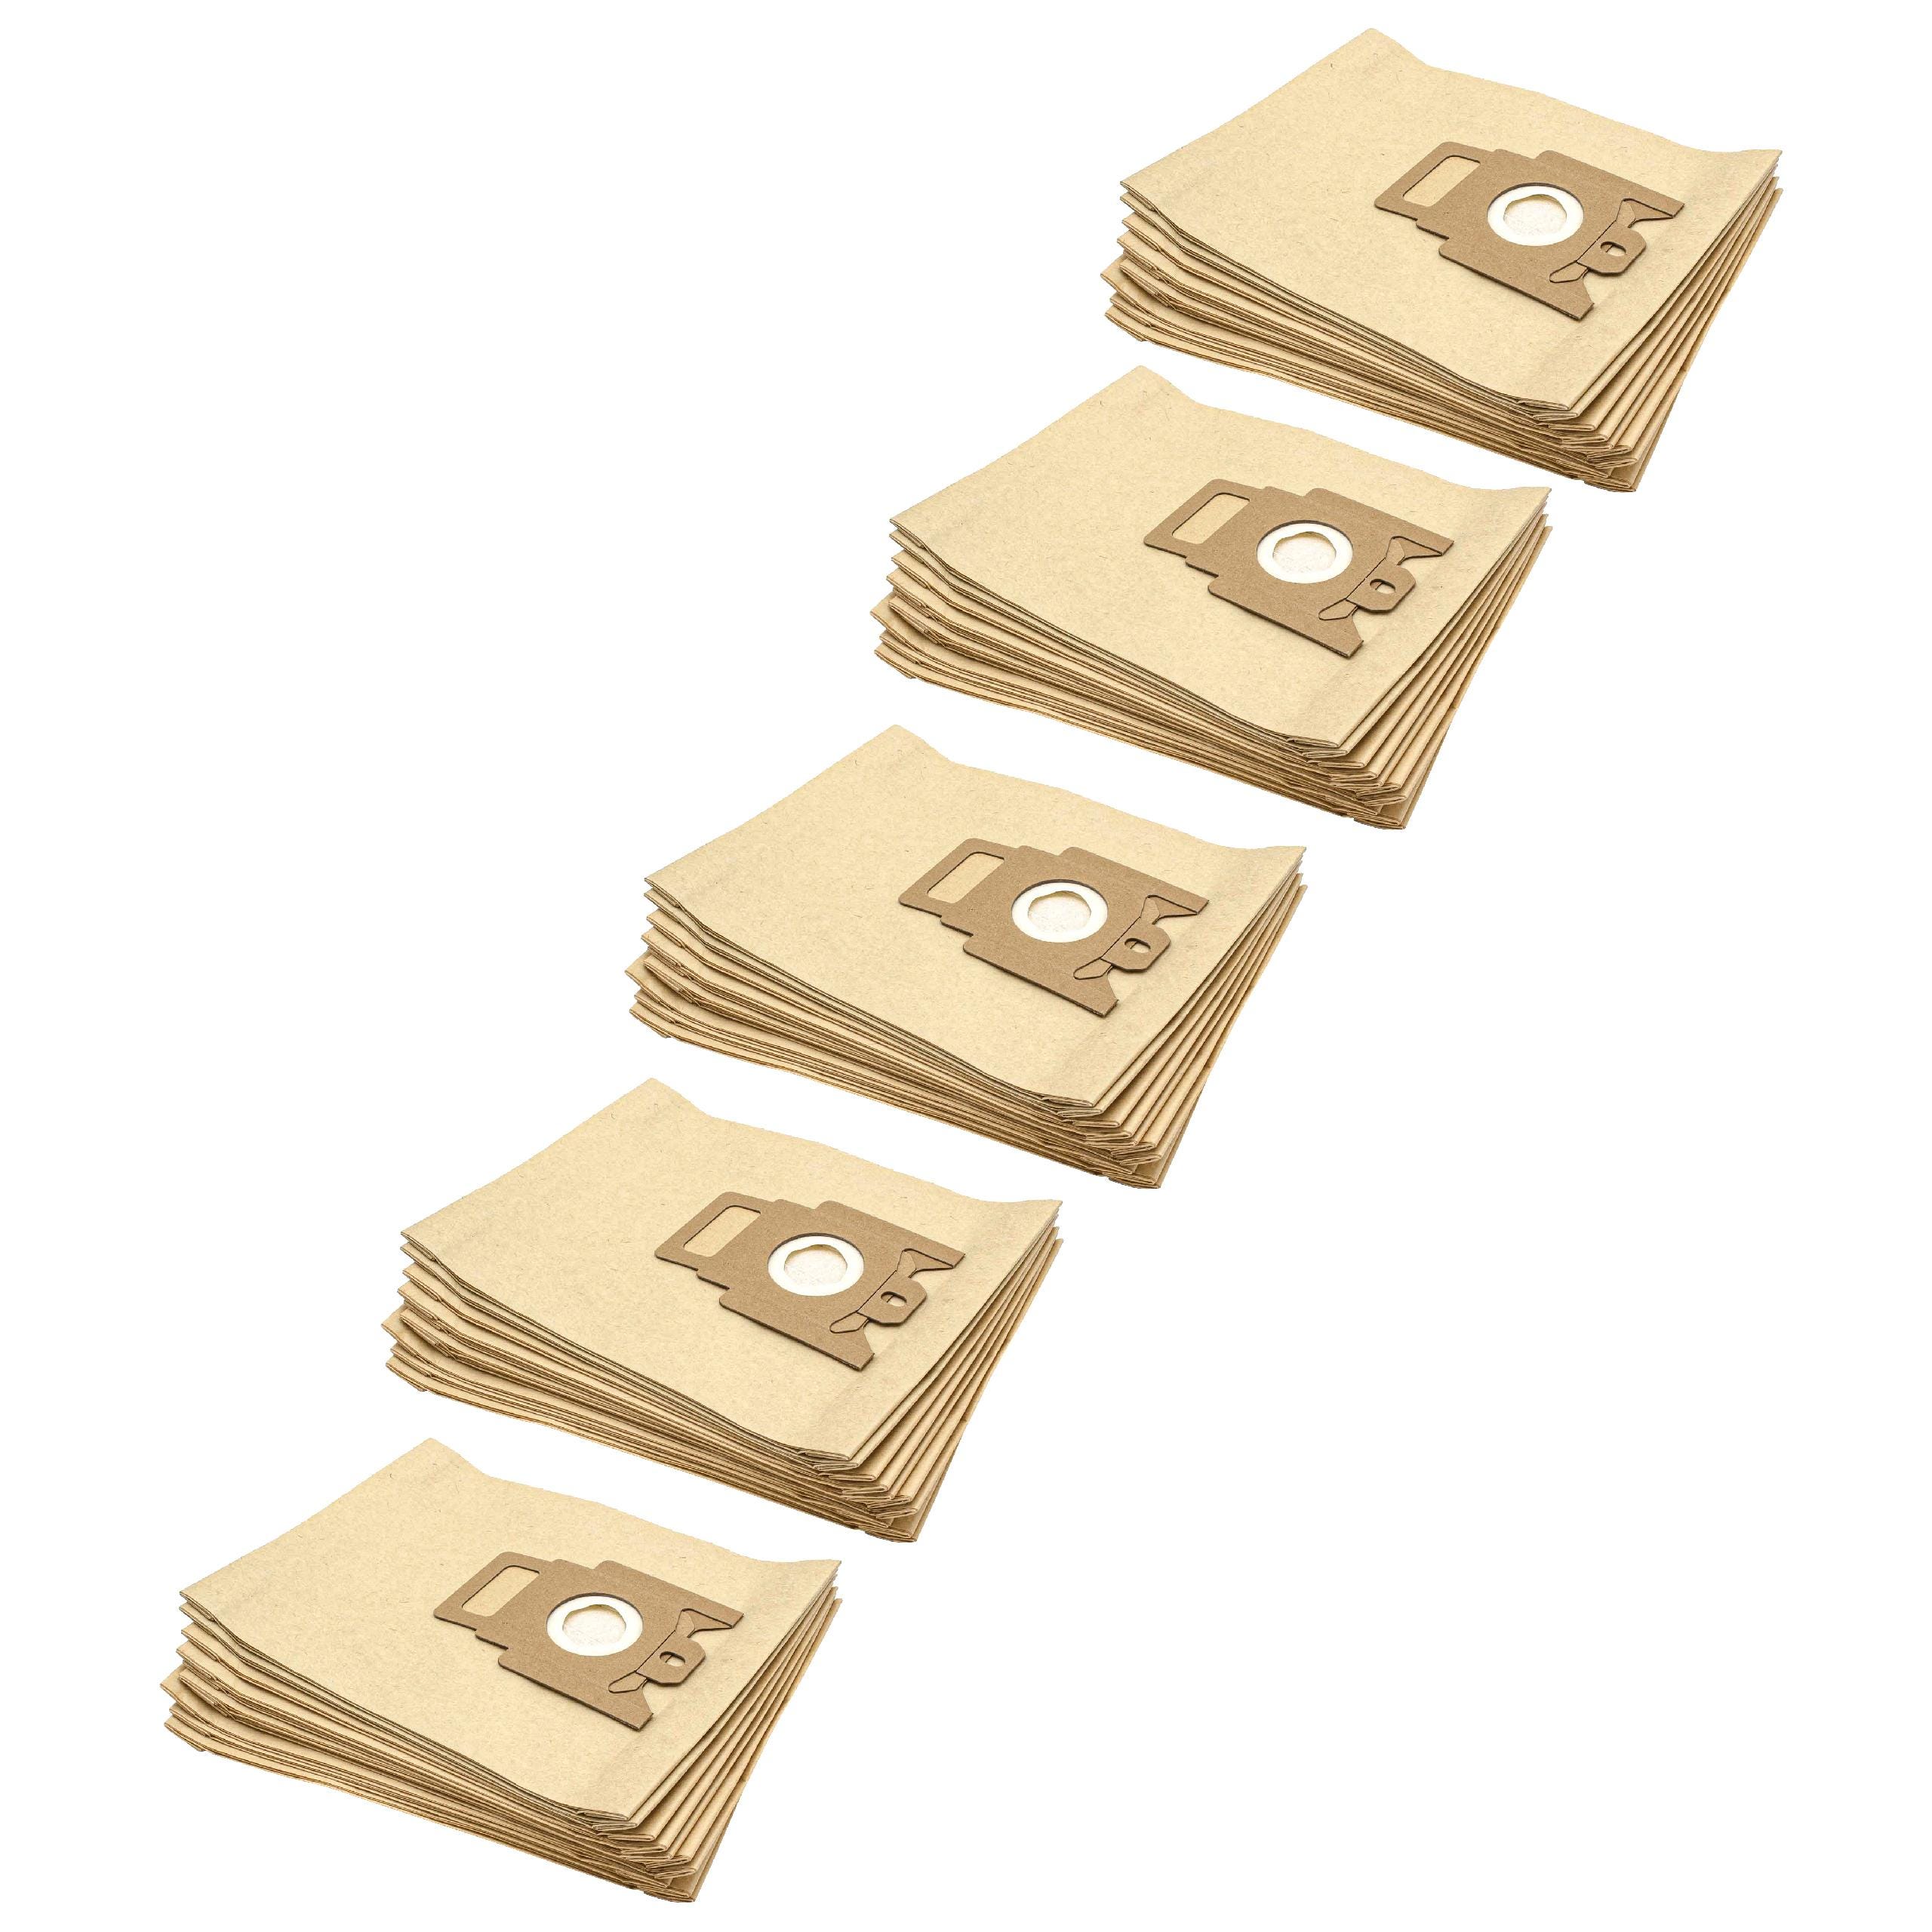 Vhbw 50x sacchetto dell'aspirapolvere compatibile con Miele Gold 2000, K/K,  Medicair mini aspirapolvere - in carta, Typ M, 28cm x 19,5cm, color sabbia